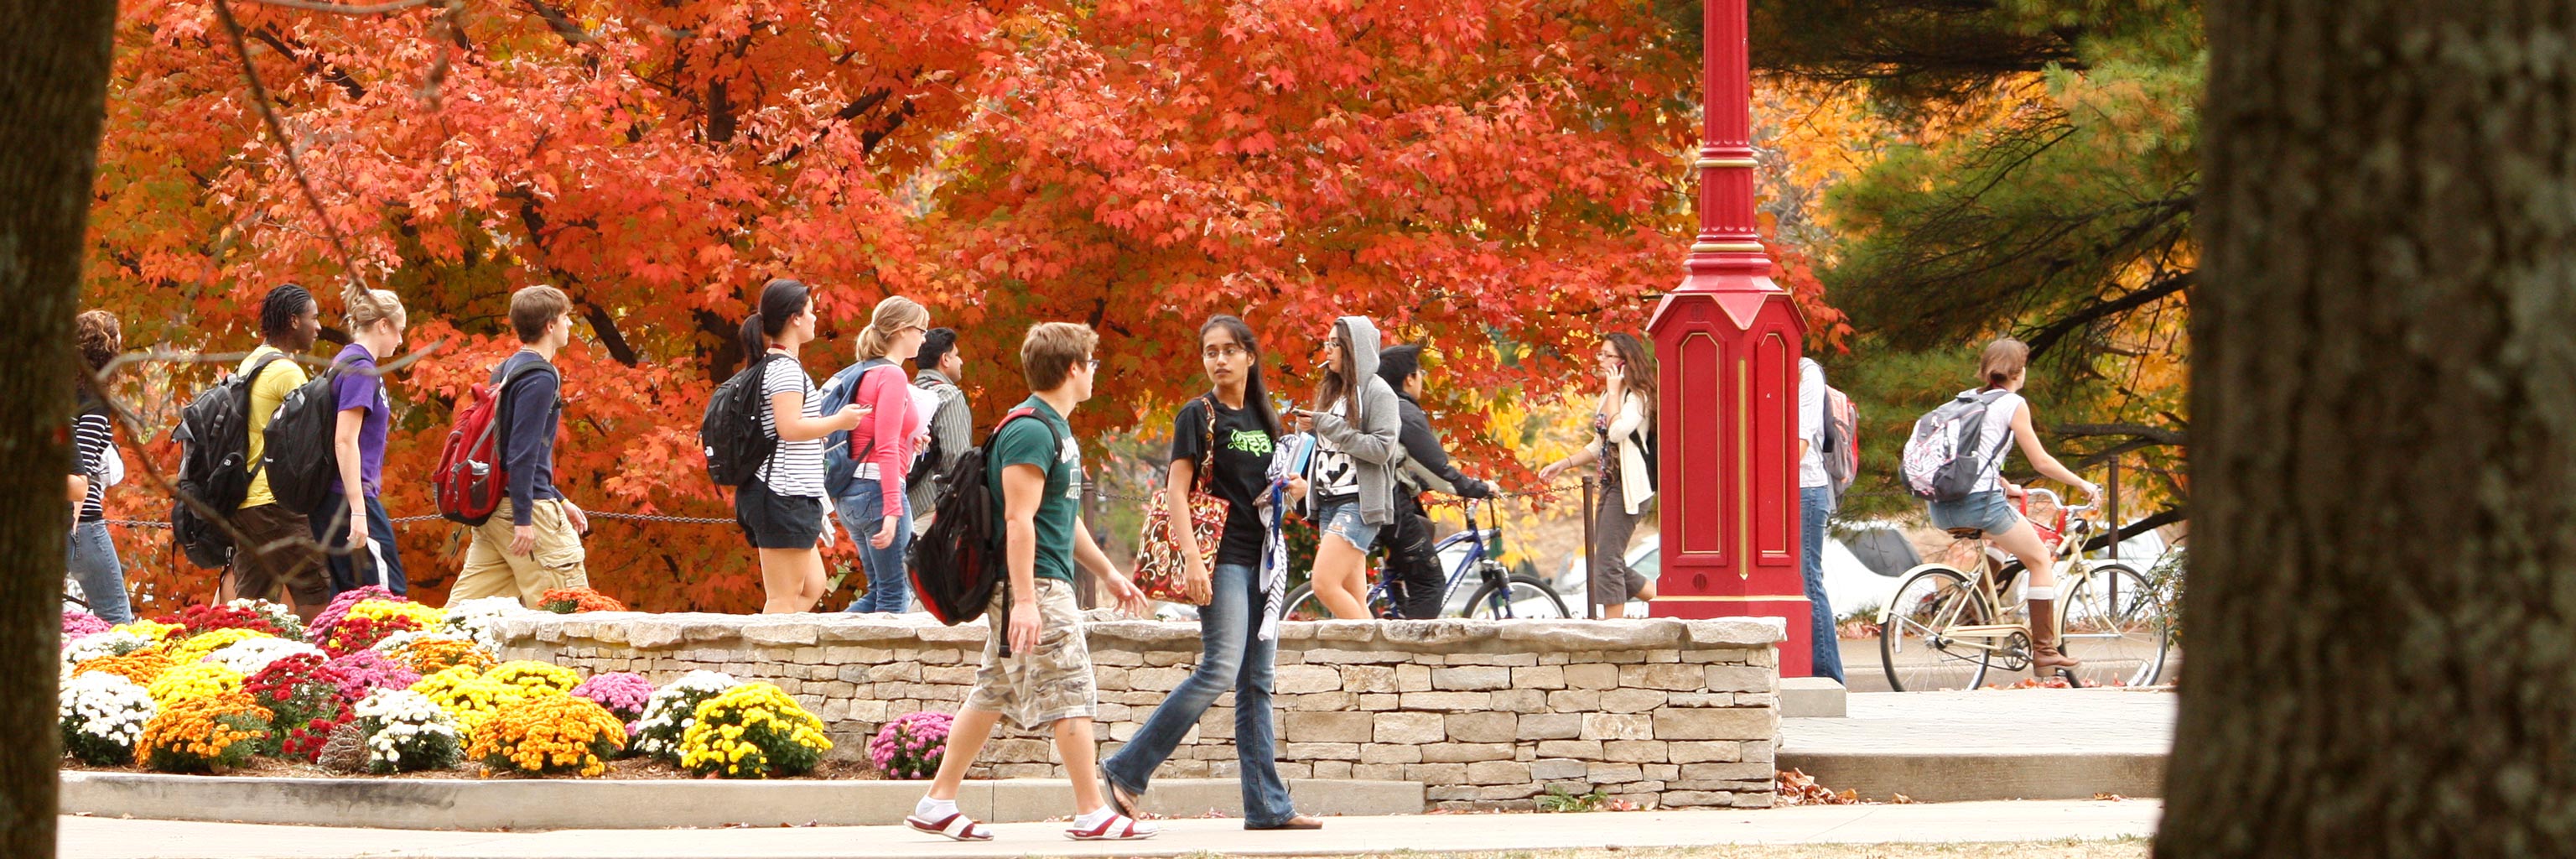 students walking around campus in autumn